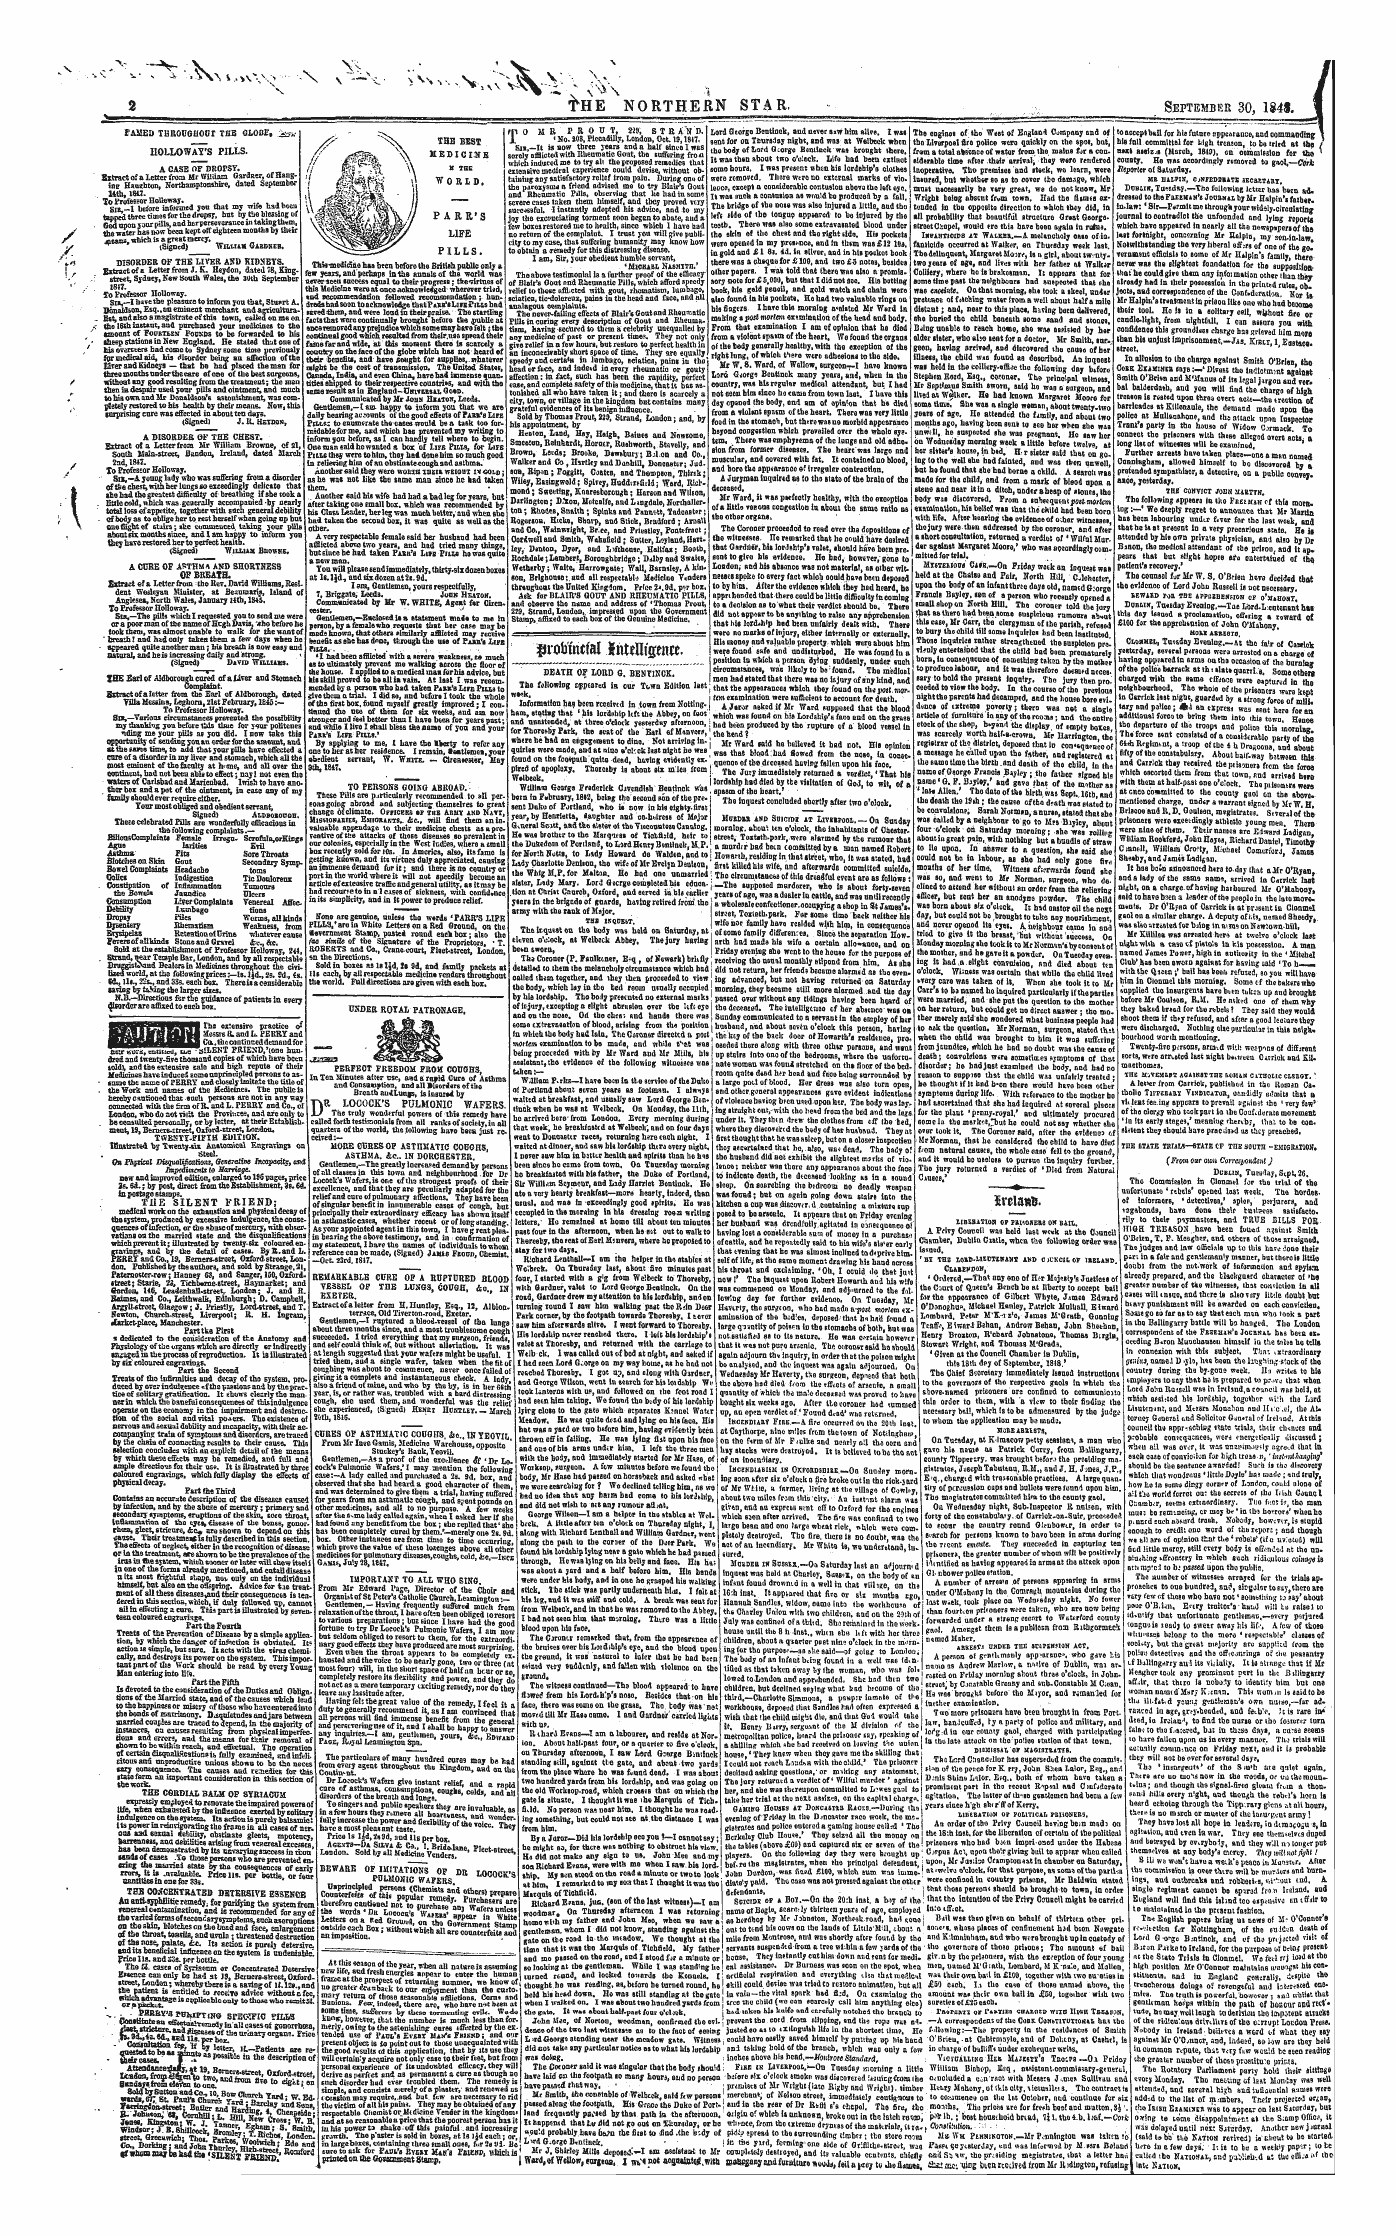 Northern Star (1837-1852): jS F Y, 1st edition - Famed Tbboughoor The Globe, ;±&U ¥1 _ Tf~ R* Mtmnir/I Ftnr« -««N .Itanp -V,